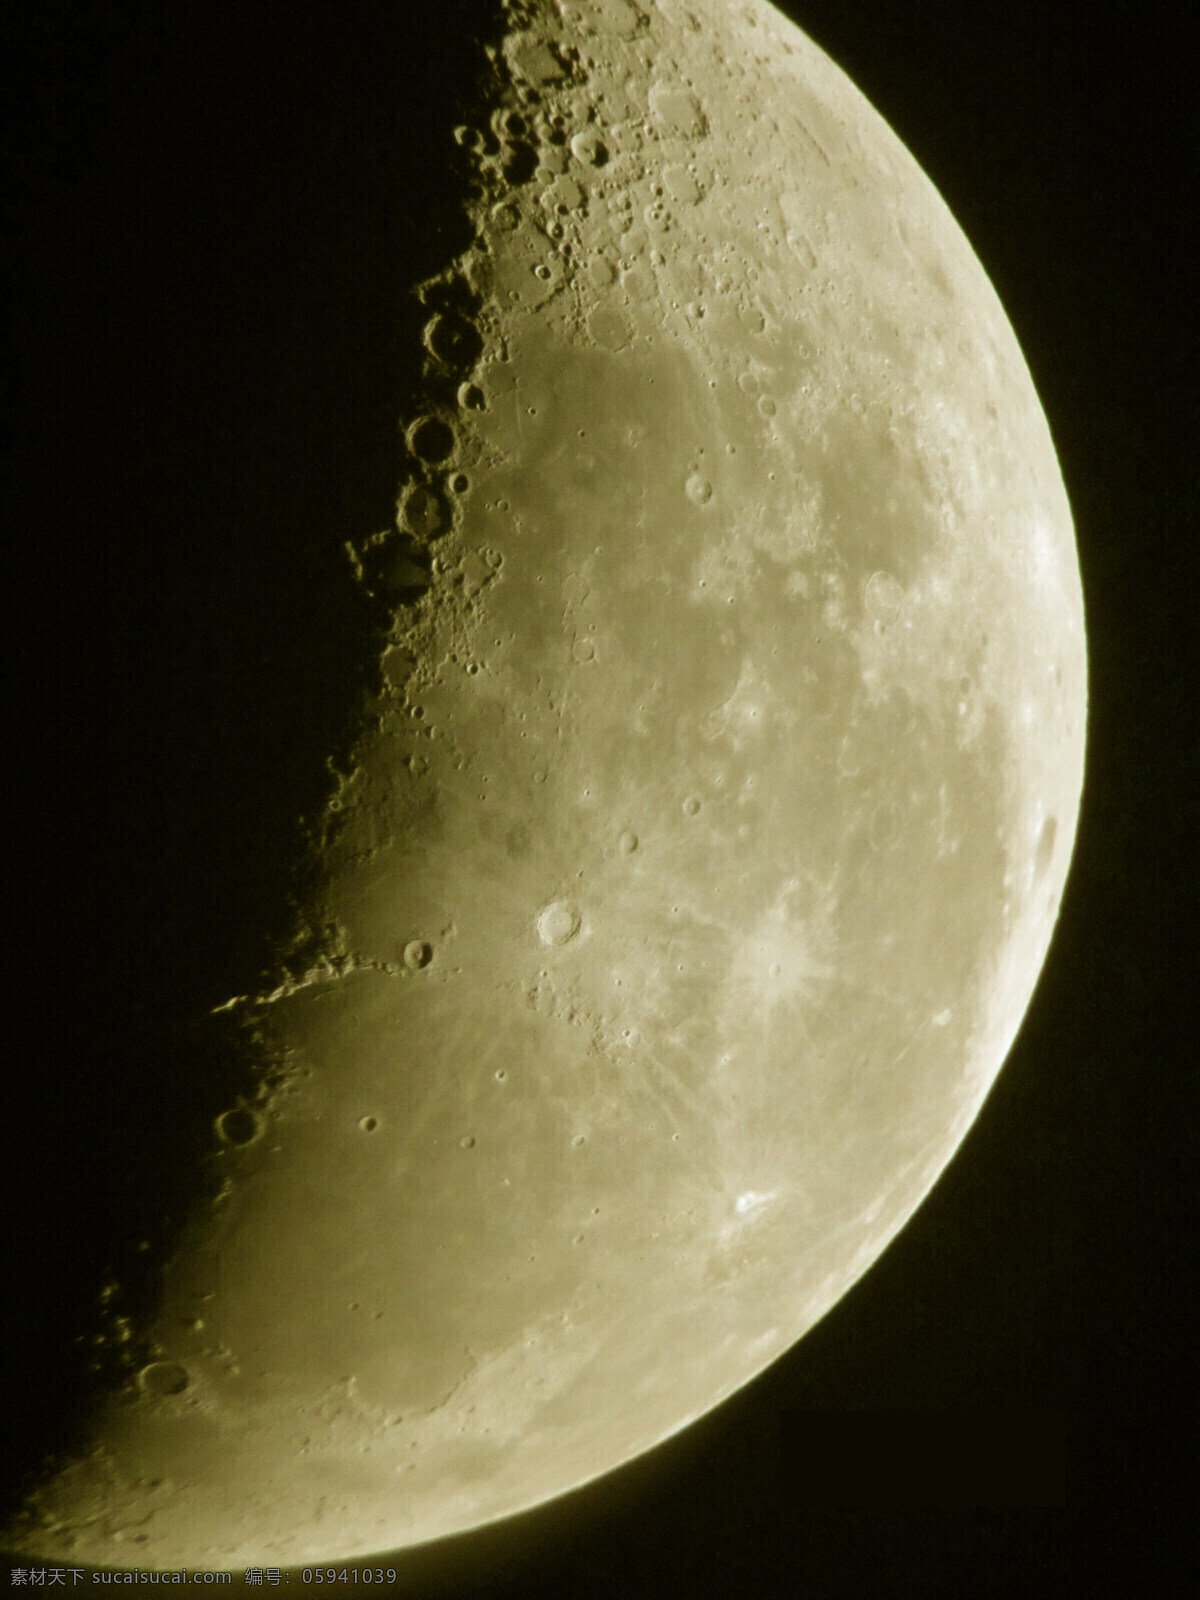 月亮 月球 星球 天空 天文 宇宙 高清 背景 月球背景 天象 放大 望远镜 天体 科学 自然科学 知识 科技 登月 探索 球体 光影 现代科技 科学研究